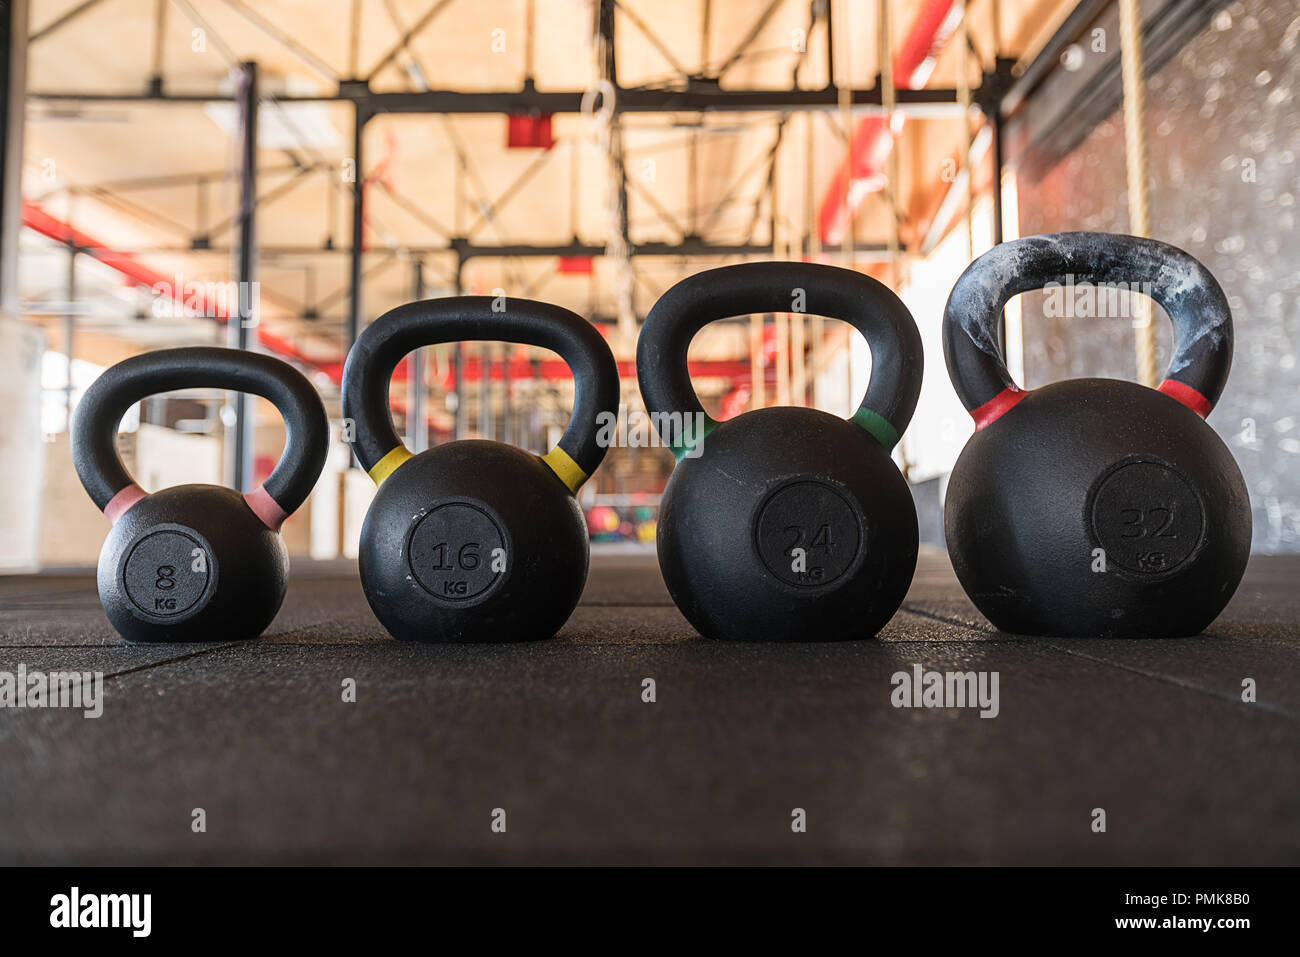 Reihe der Kettlebell oder girya Gewichte in einer Turnhalle Gewicht in ein Fitness- und Aktiv gesund Lifestyle Konzept Stockfoto